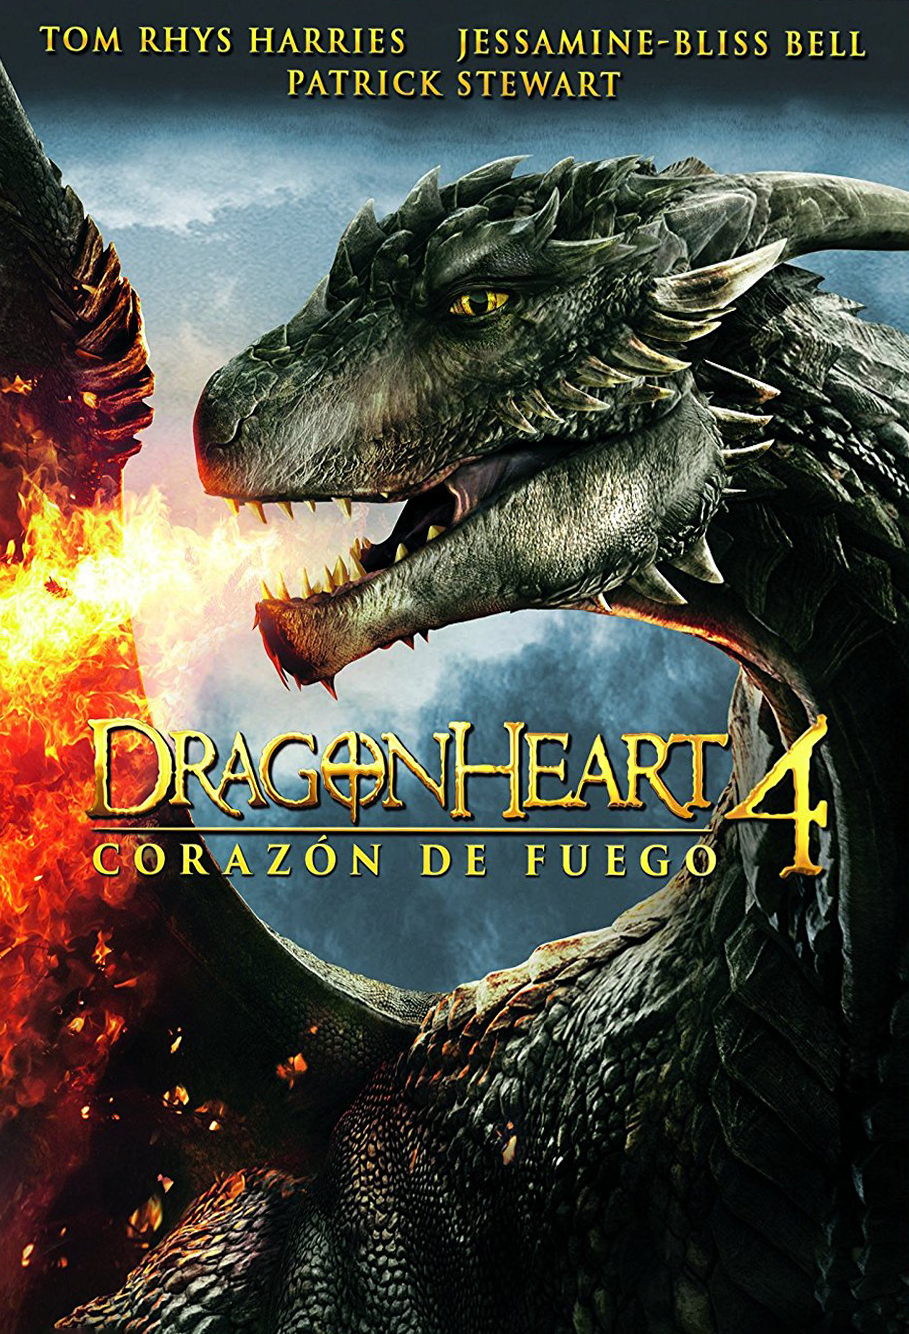 Dragonheart 4: Corazon de Fuego